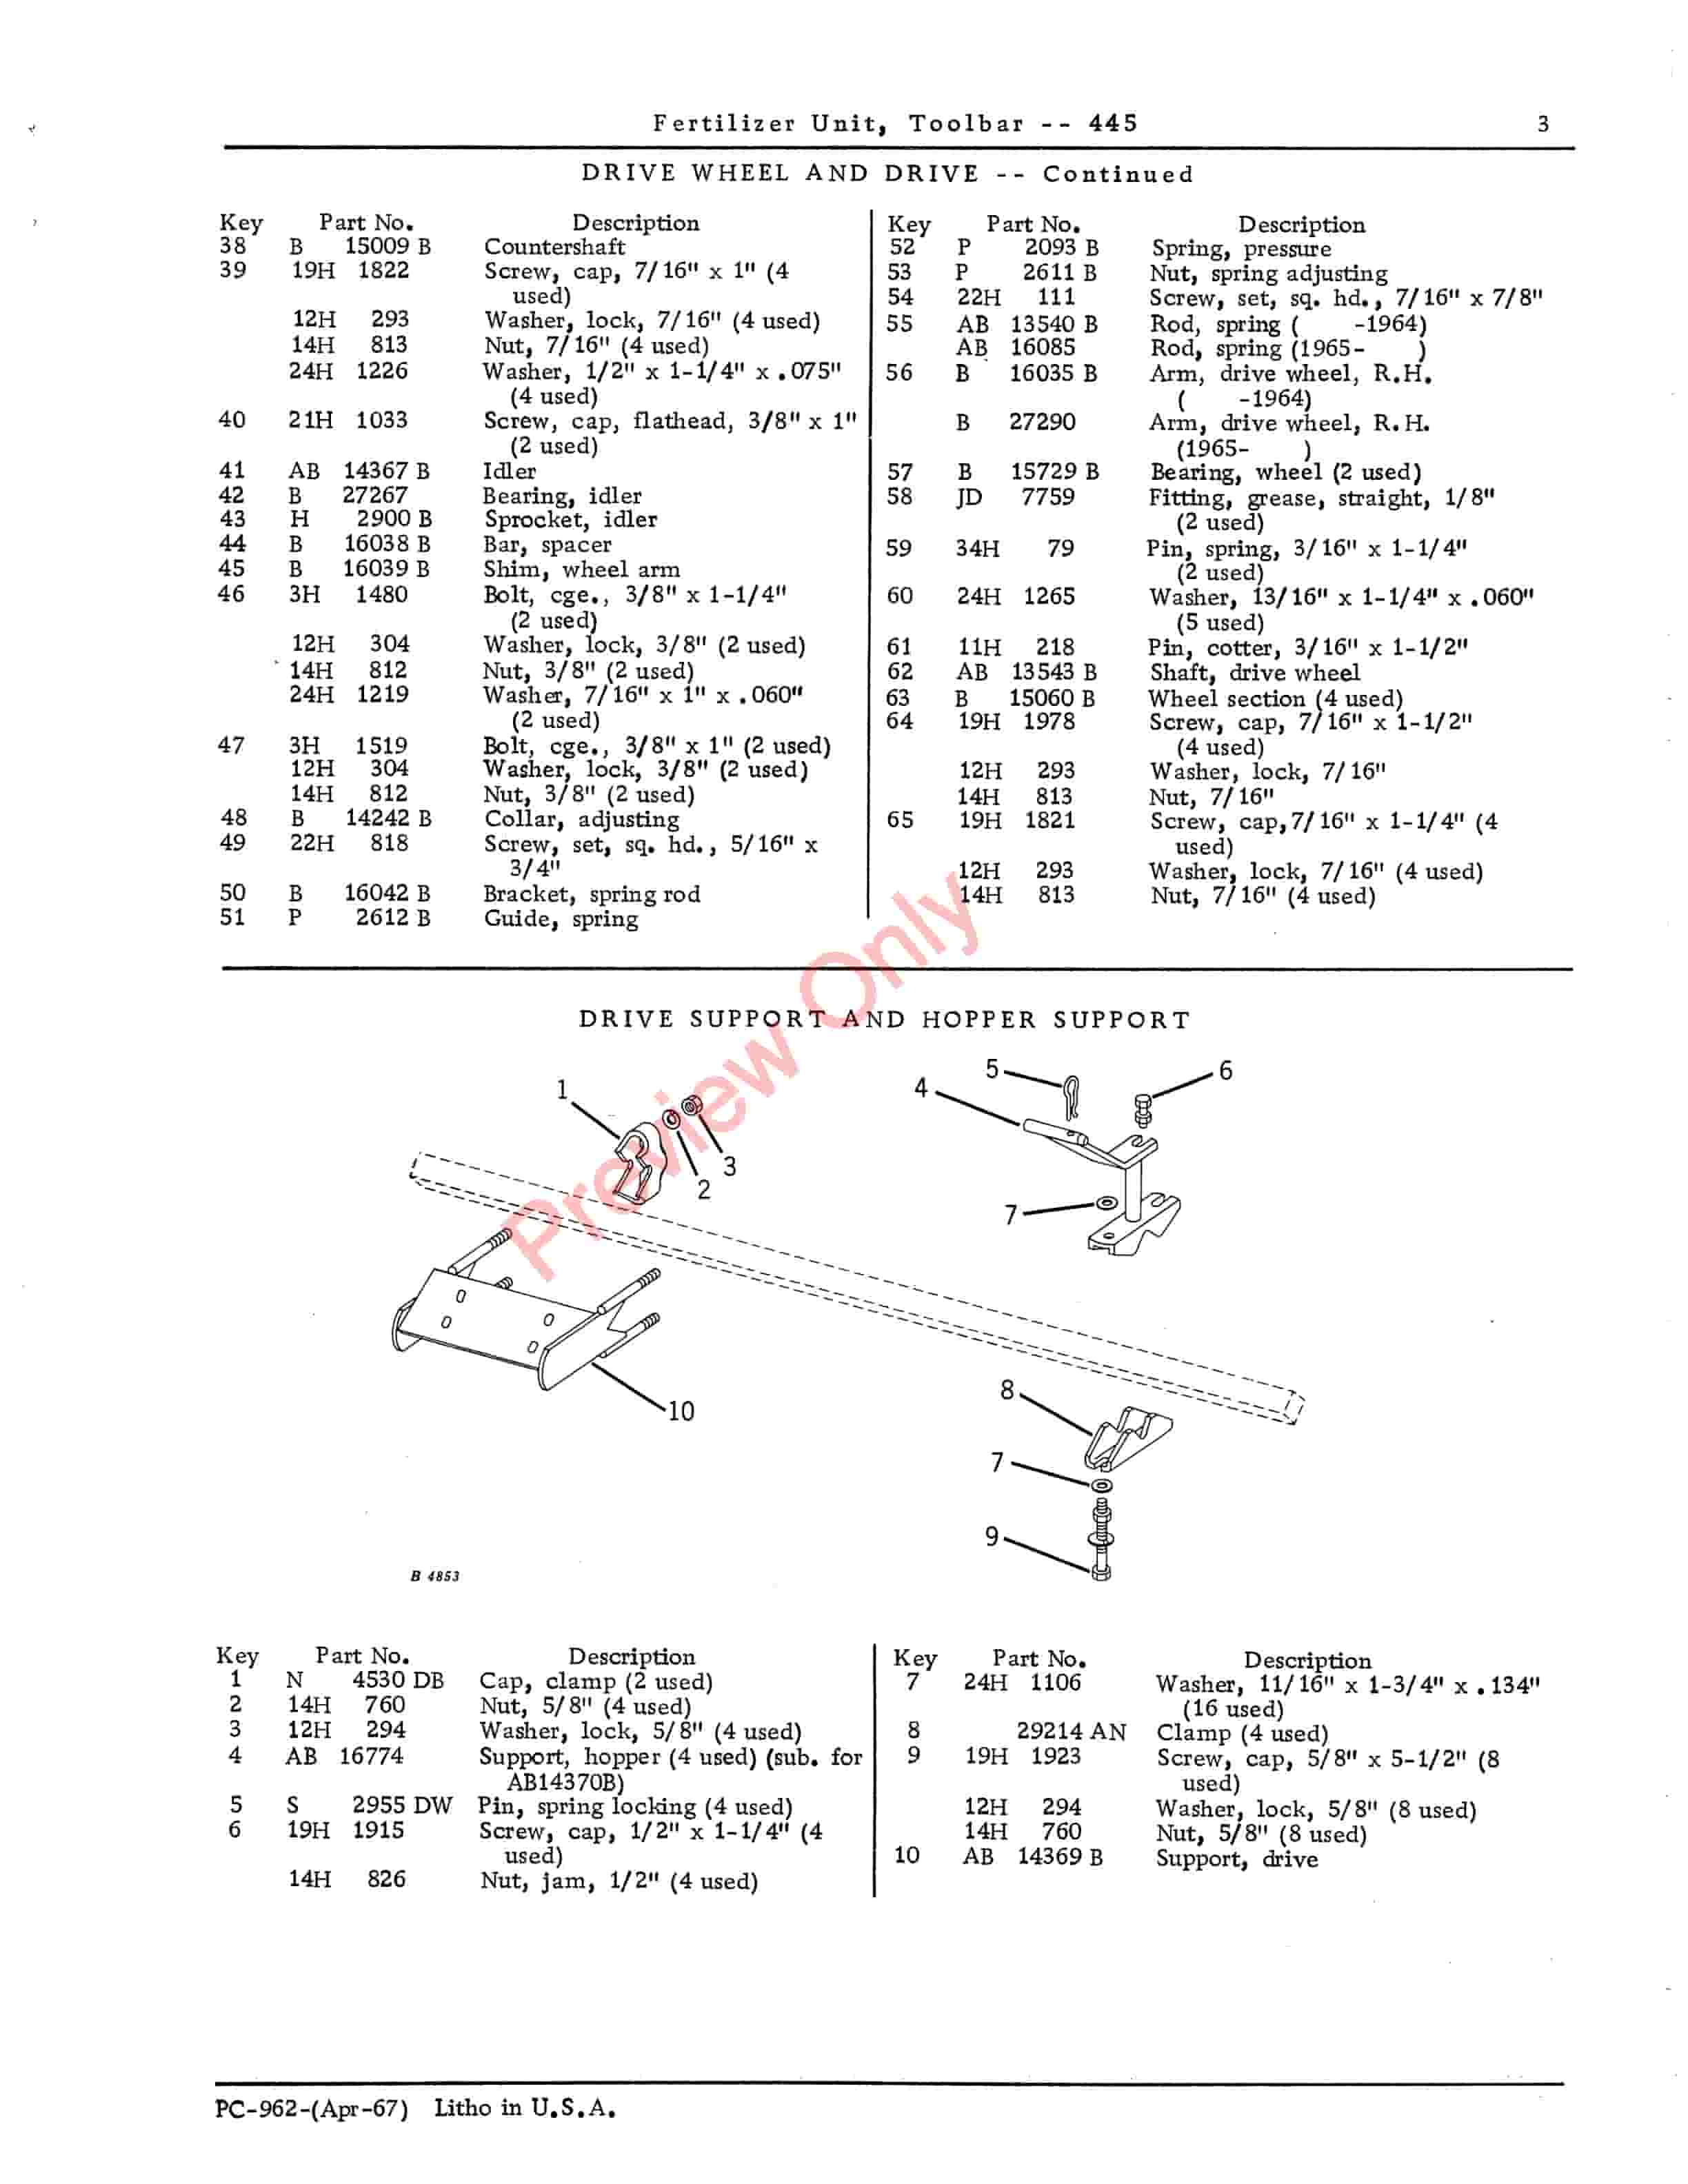 John Deere Toolbar Fertilizer Unit – 445 Parts Catalog PC962 01APR67-5